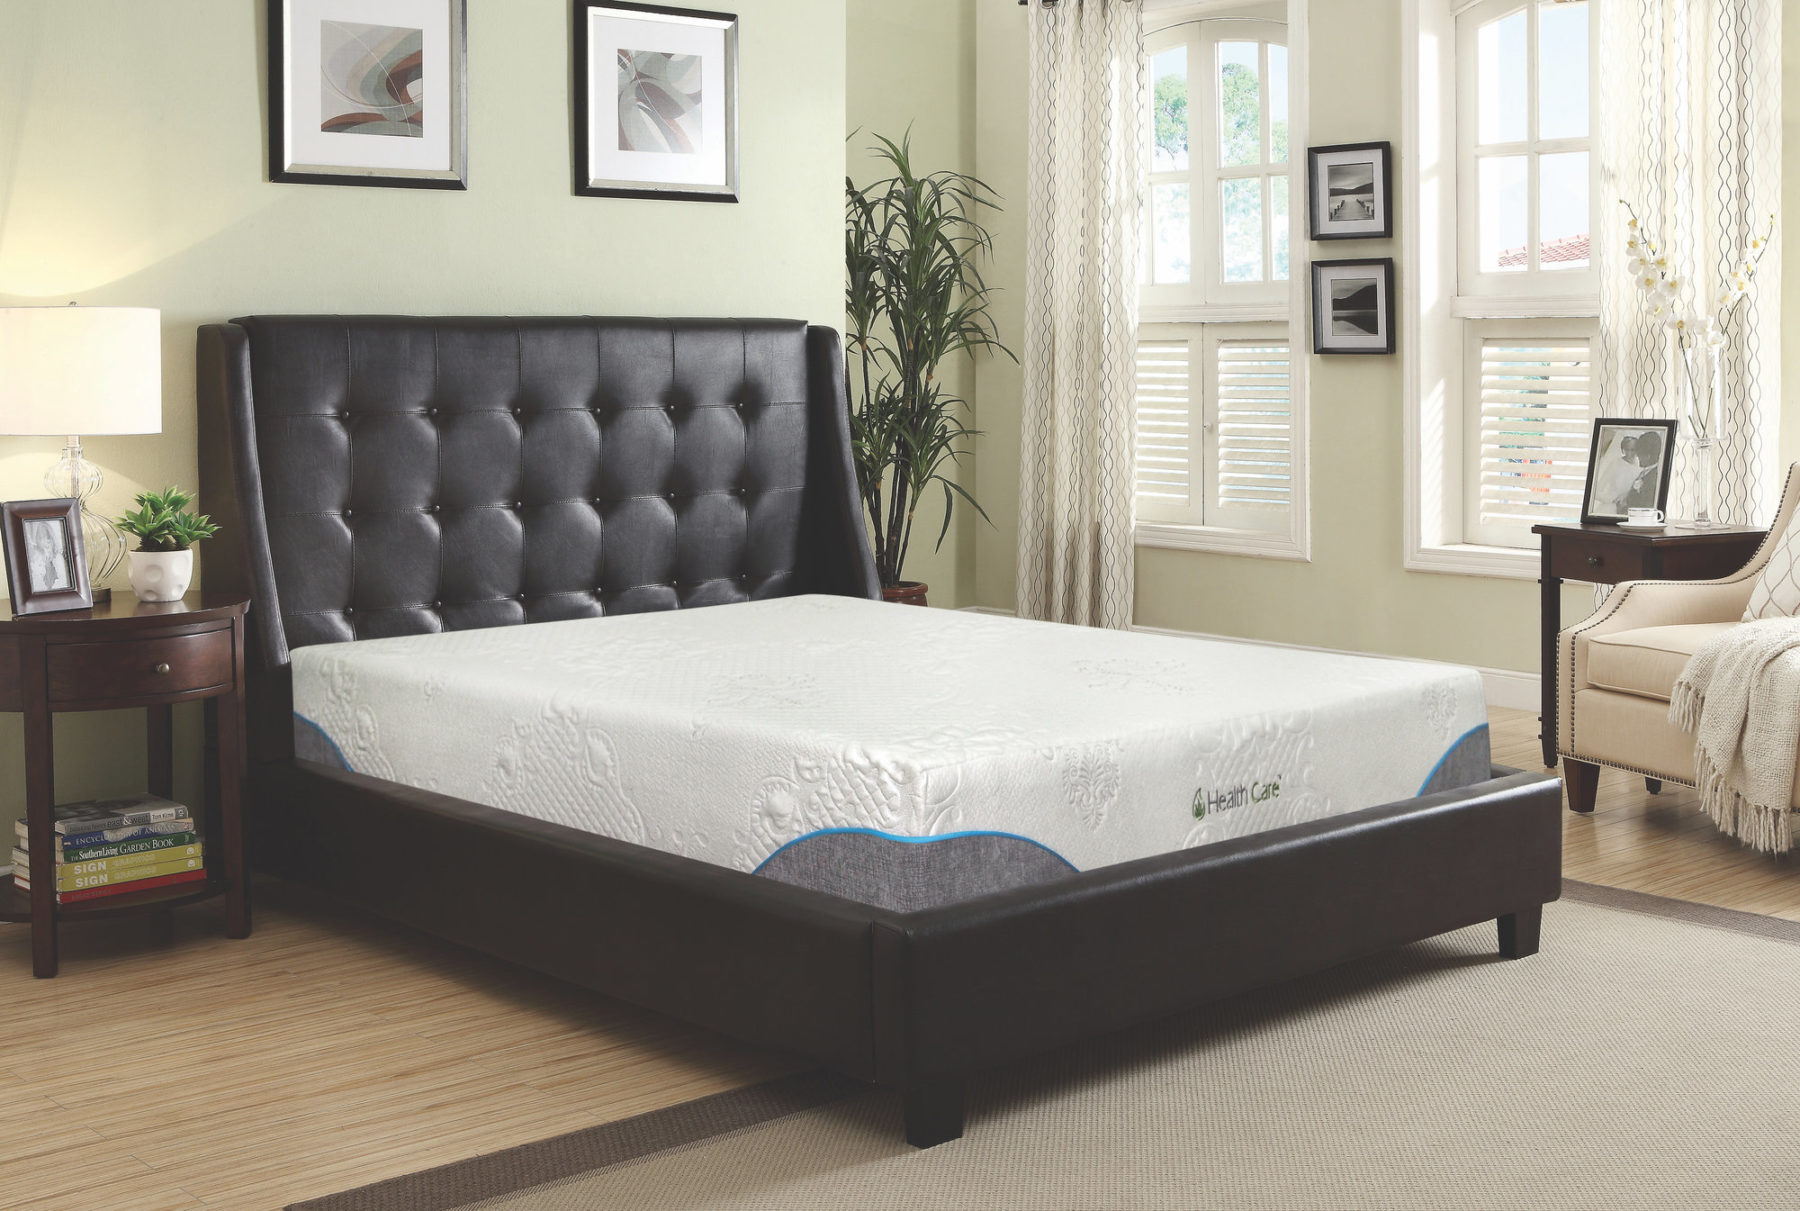 gelcare 9 origin king mattress